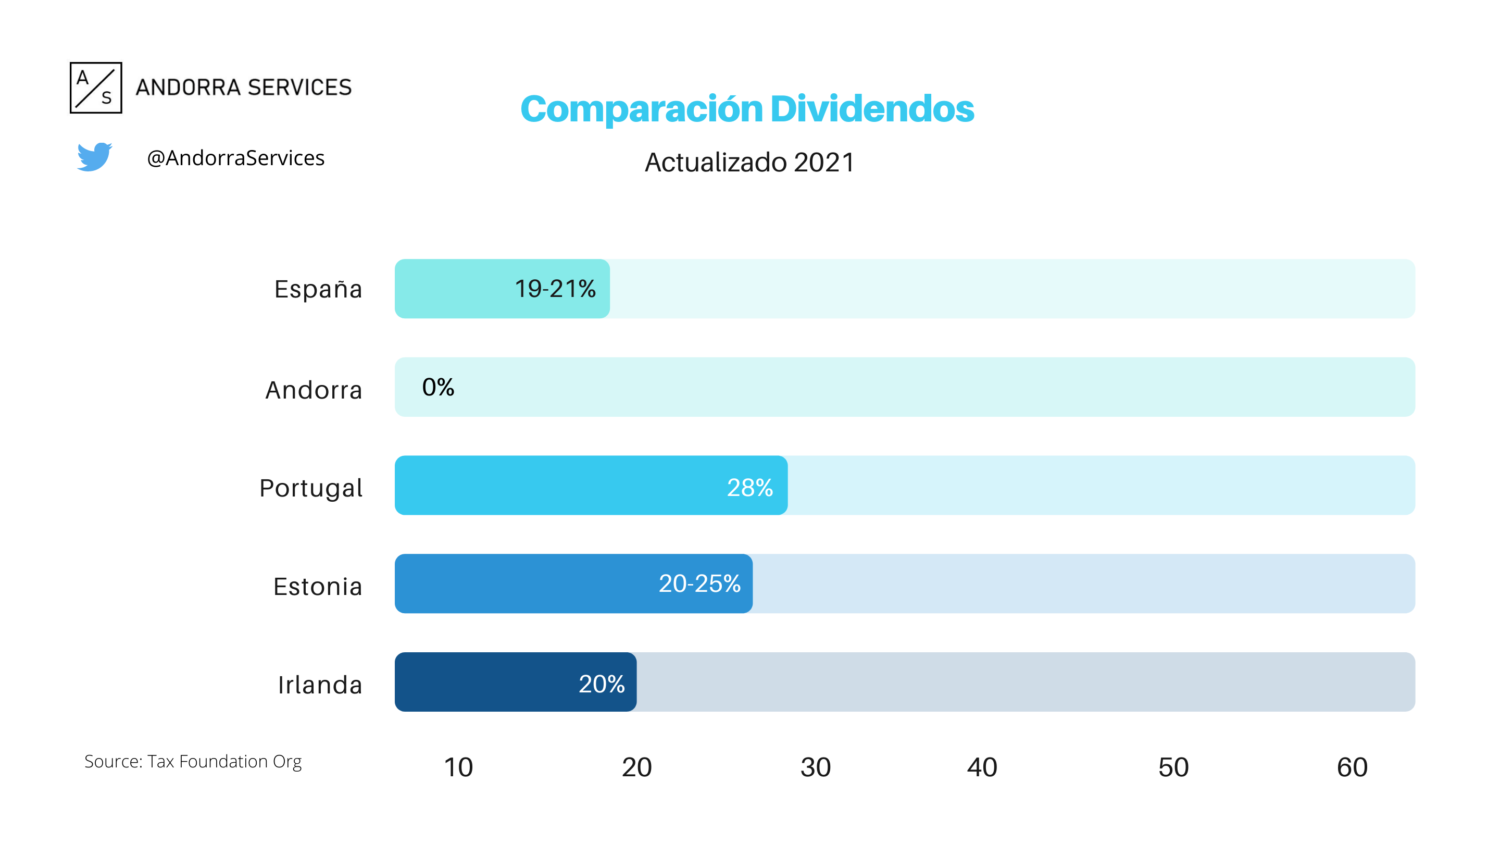 Comparativa Dividendos en Andorra vs España